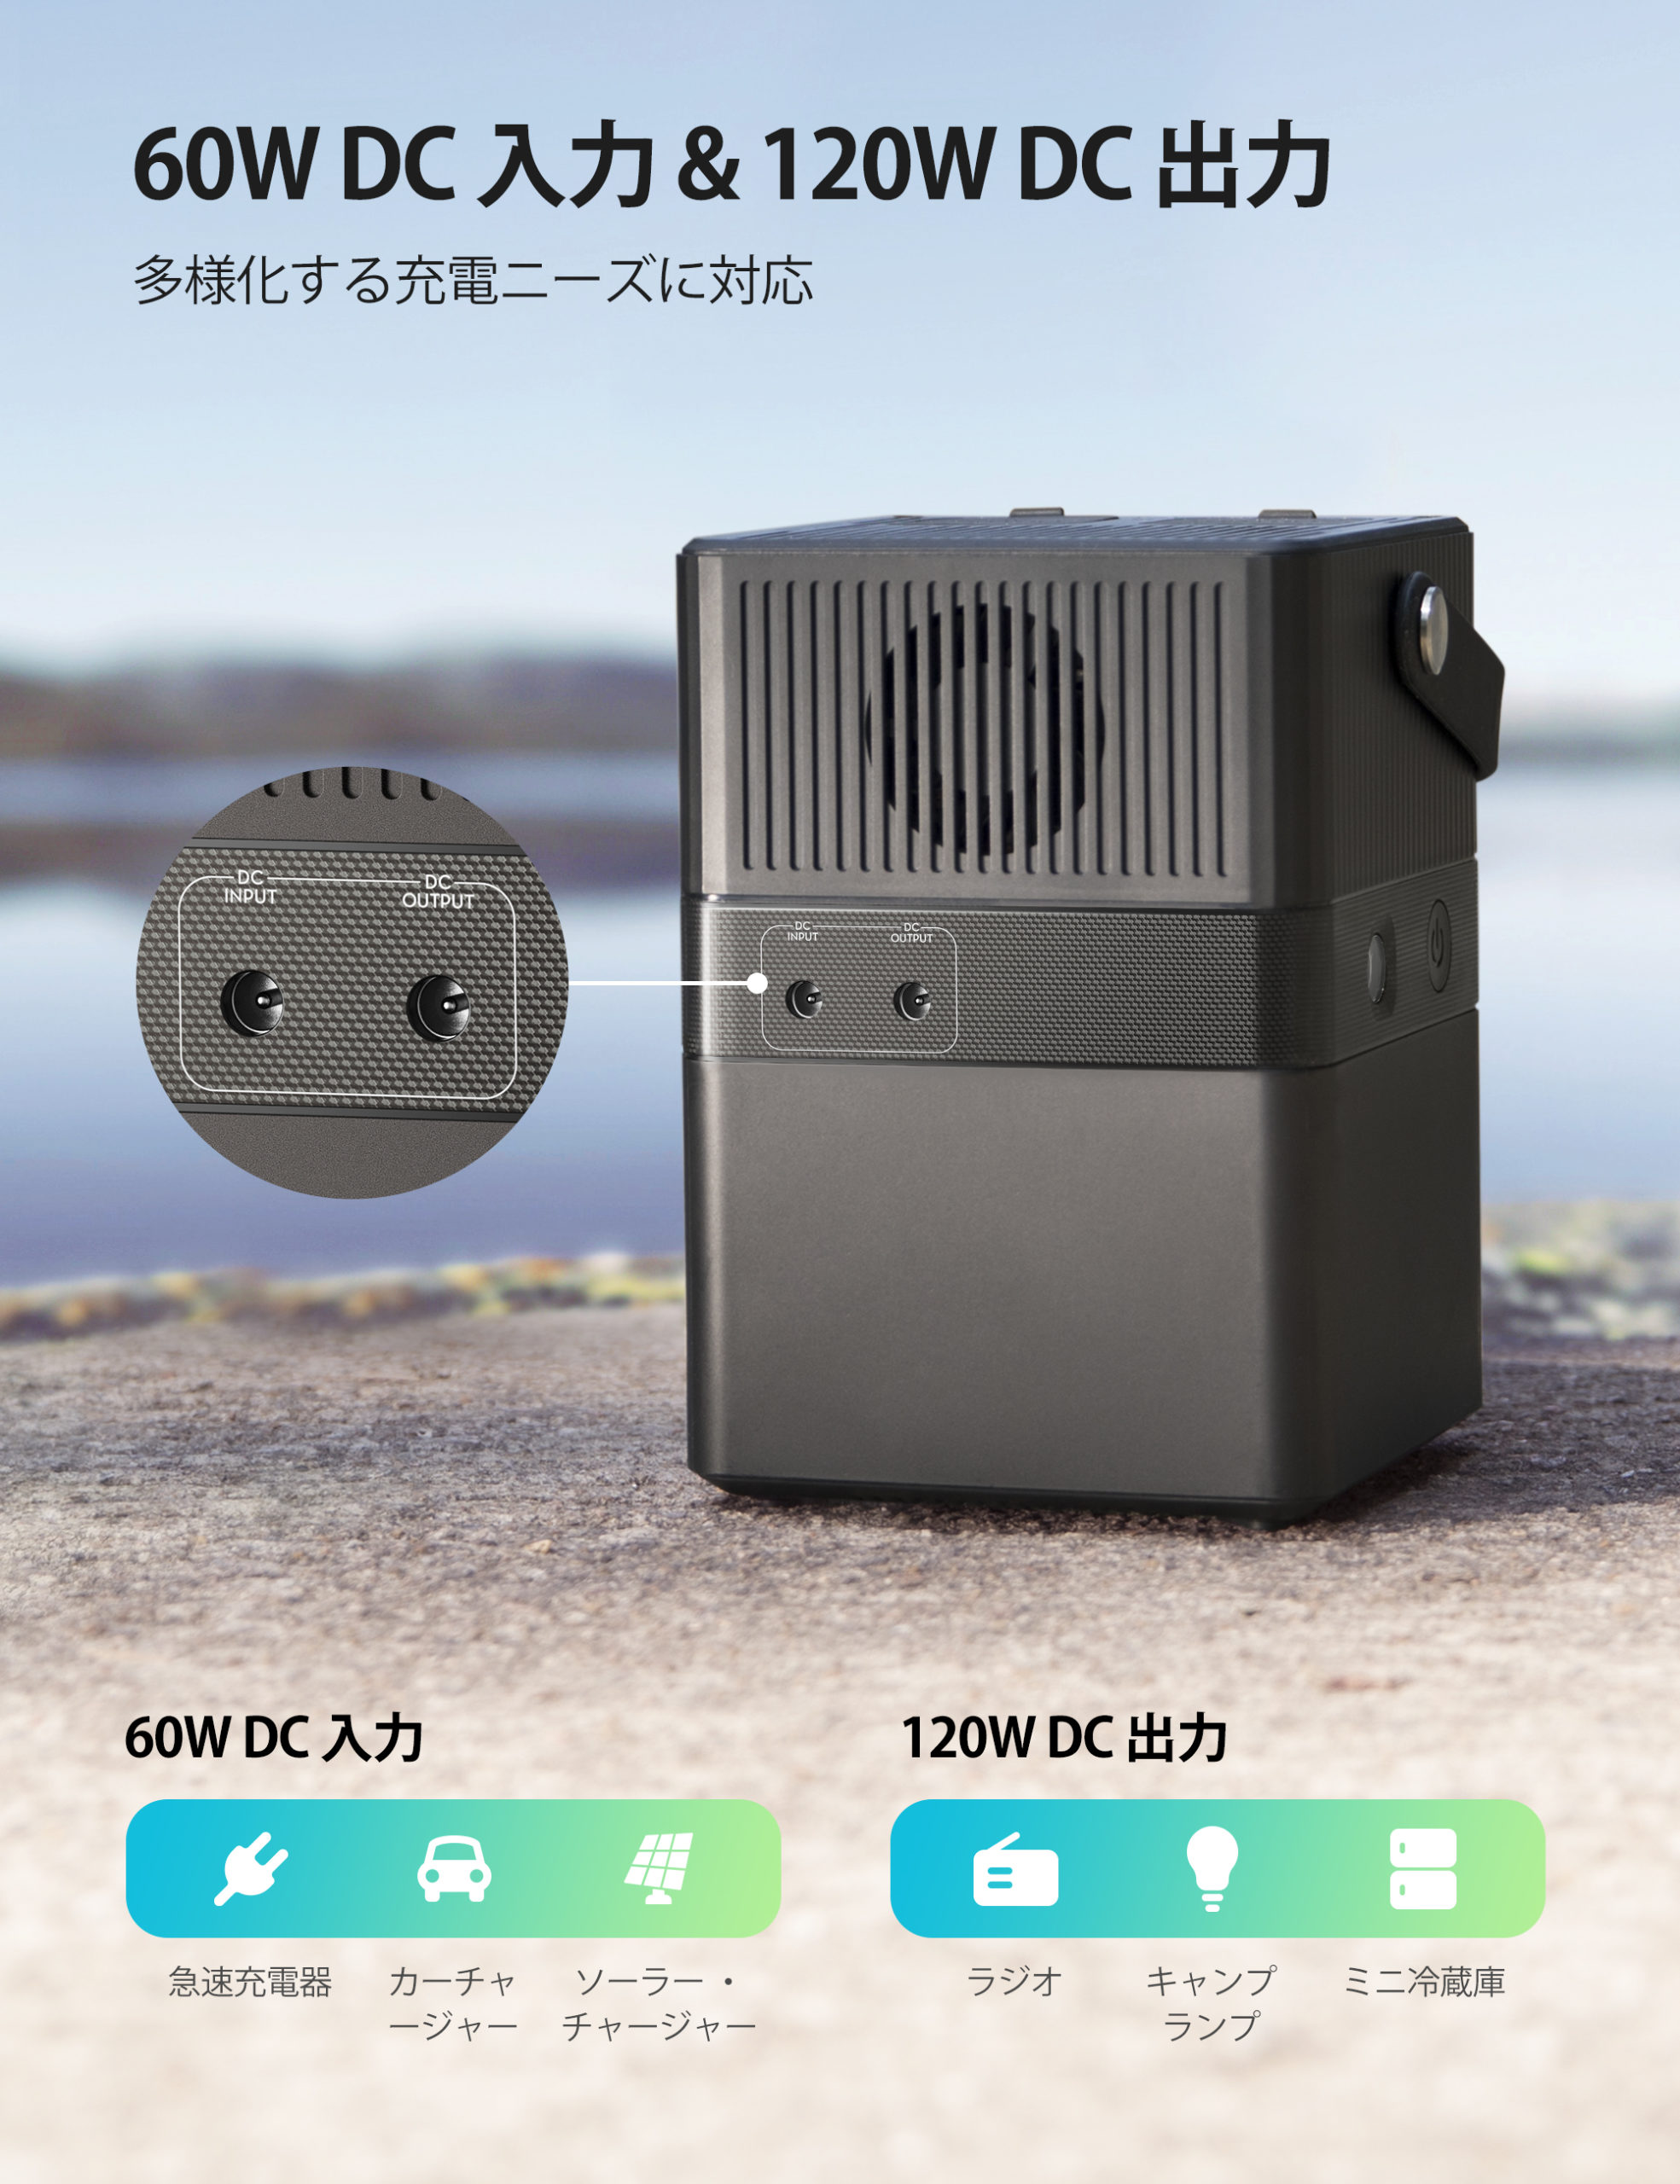 大容量ポータブル電源“RP-PB187” 300W ポータブル電源 | RAVPower Japan